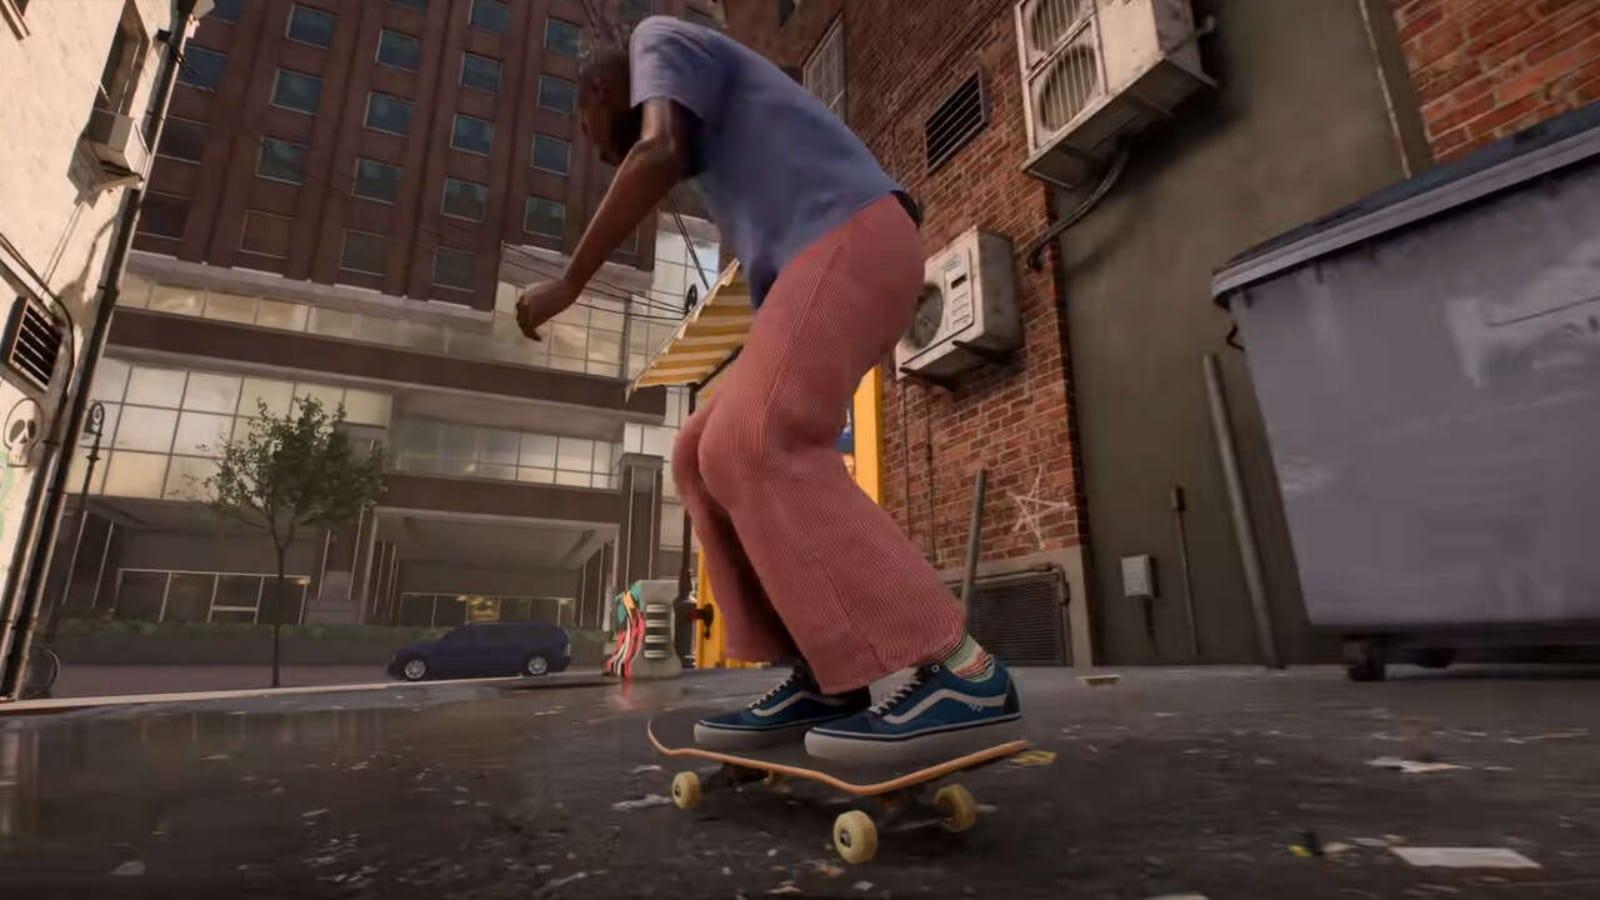 Skate 4  EA revela primeiros detalhes do jogo - Canaltech